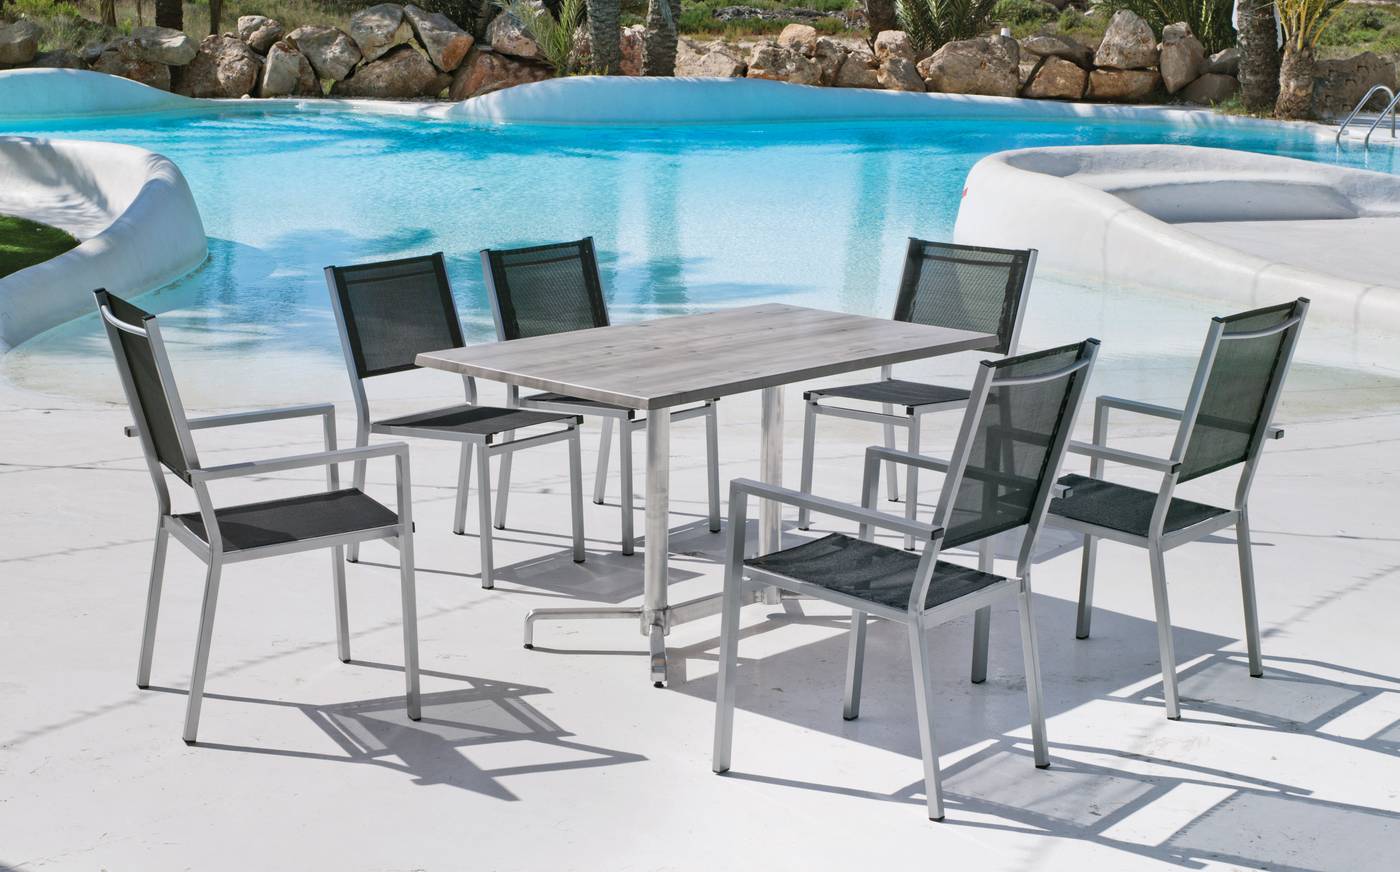 Conjunto aluminio: mesa rectangular de 140 cm. con tablero de heverzaplus y 6 sillones de aluminio color plata y textilen color gris